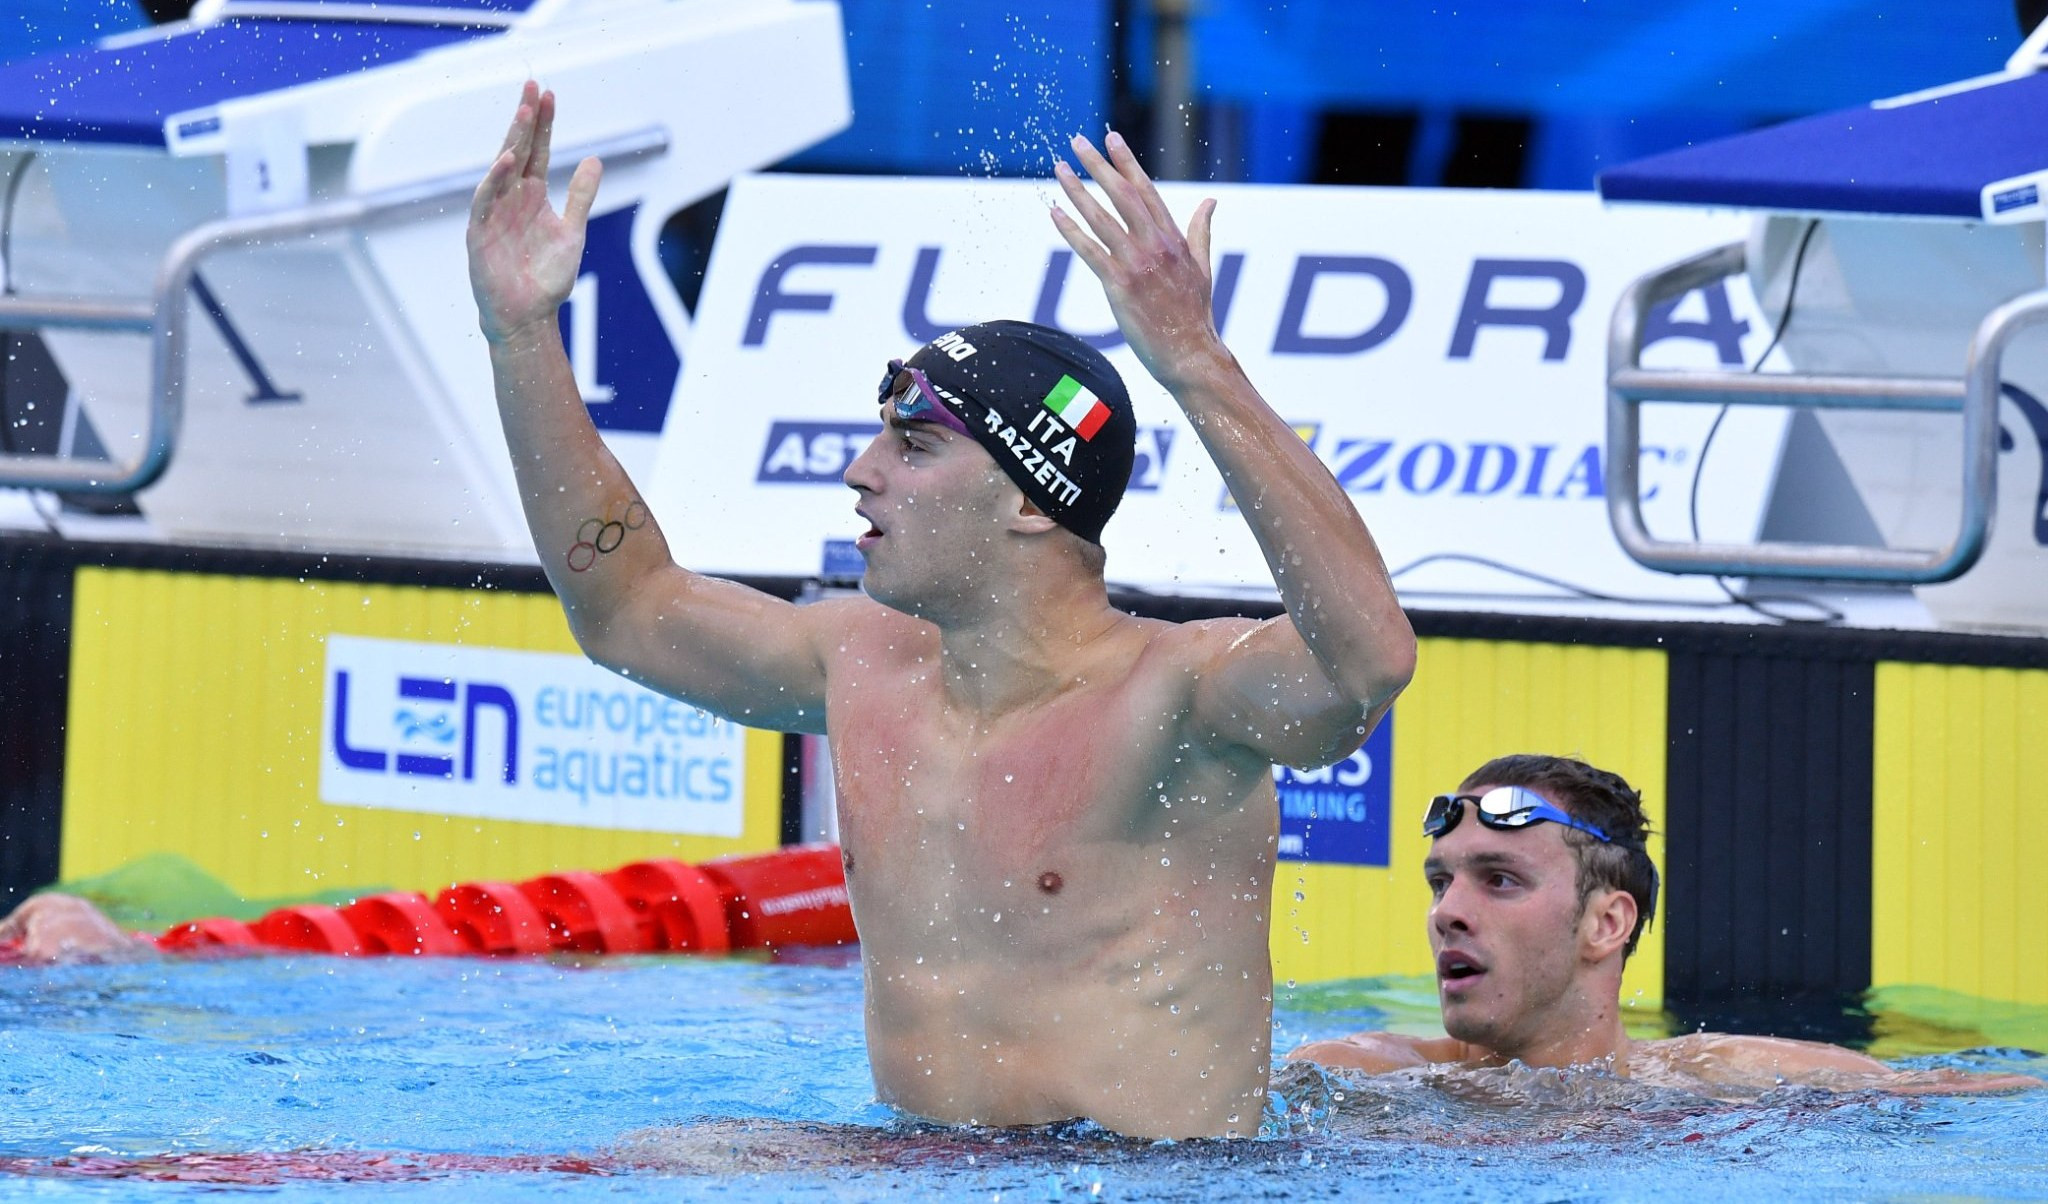 Nuoto, il genovese Razzetti vince la medaglia d'oro nei 400 misti a Roma